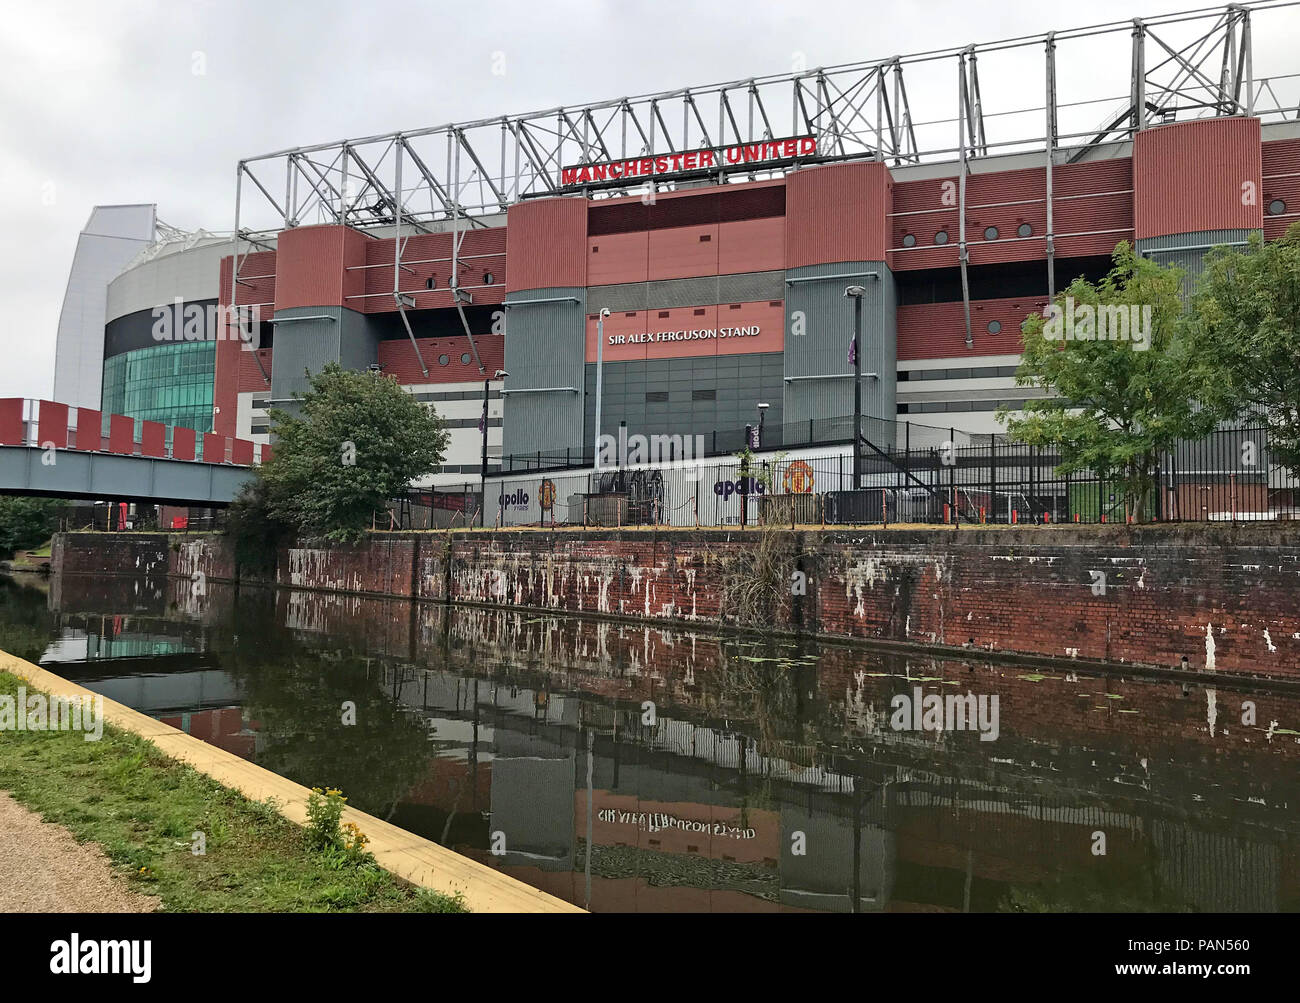 Manchester United Football Club, MUFC, Alex Ferguson stehen, vom Canal, Stretford, Manchester, North West England, Großbritannien Stockfoto